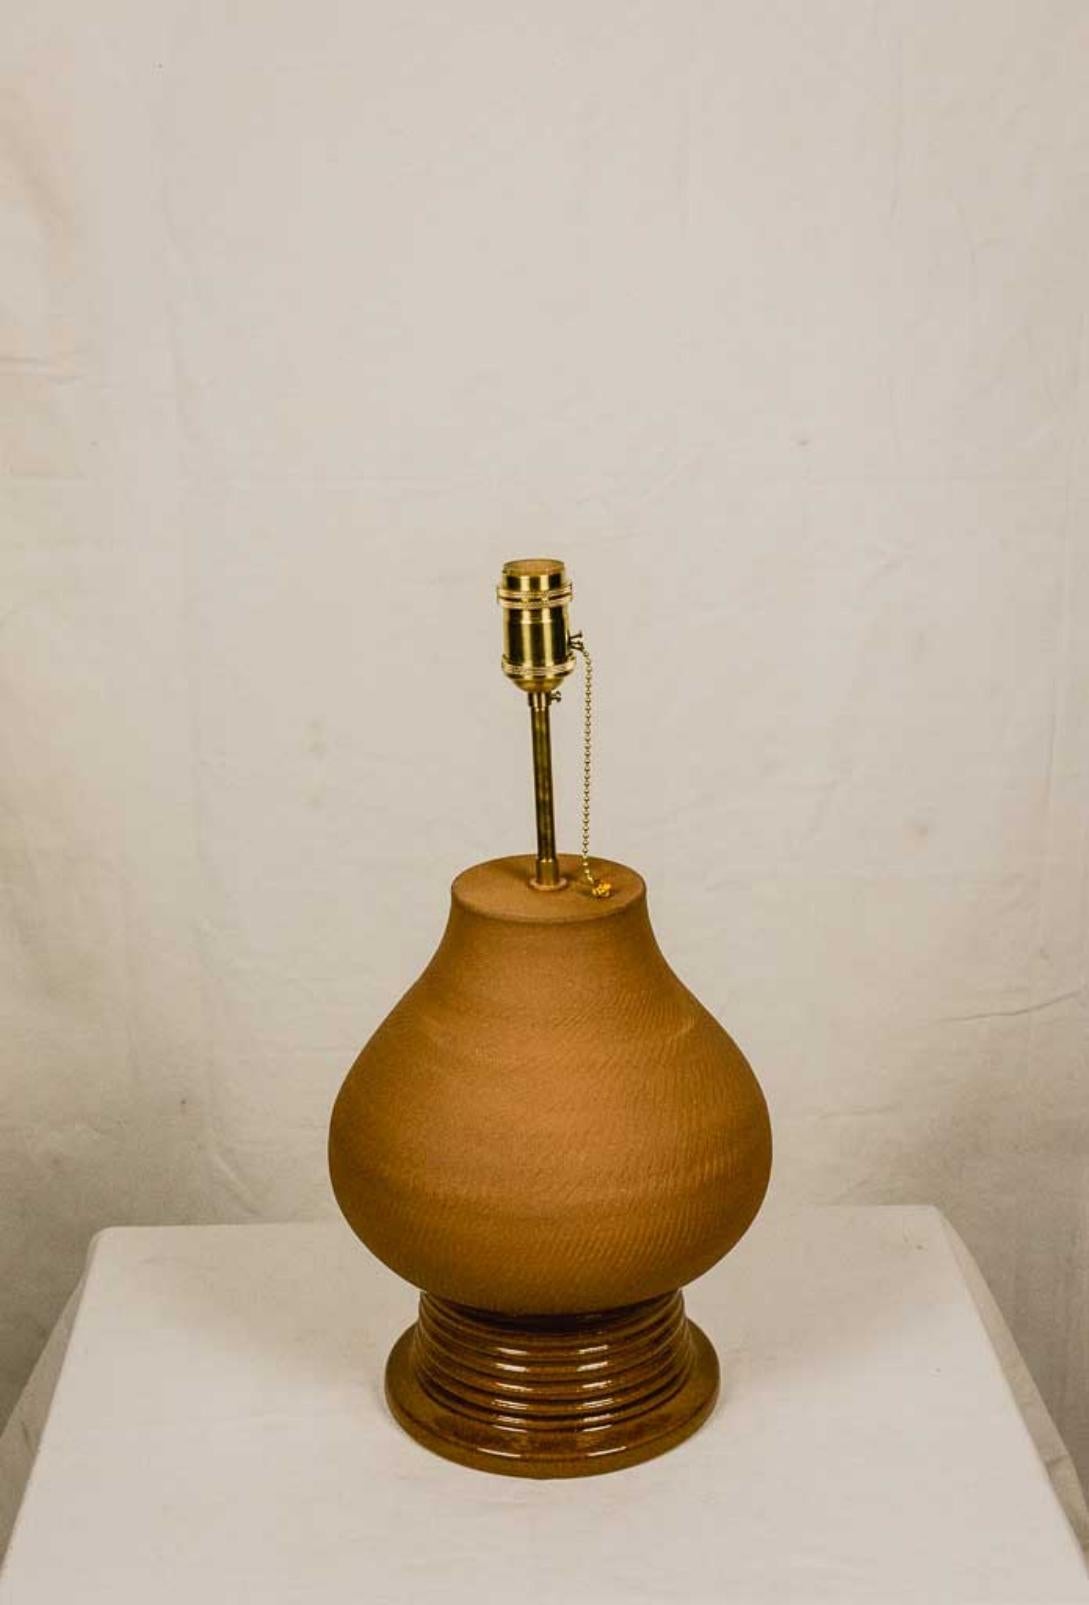 Lampe de table inspirée de l'amphore antique, qui apparaît pour la première fois sur les côtes du Liban et de la Syrie, au cours du quinzième siècle avant Jésus-Christ. C. et se sont répandus dans le monde antique en tant que récipients faciles à